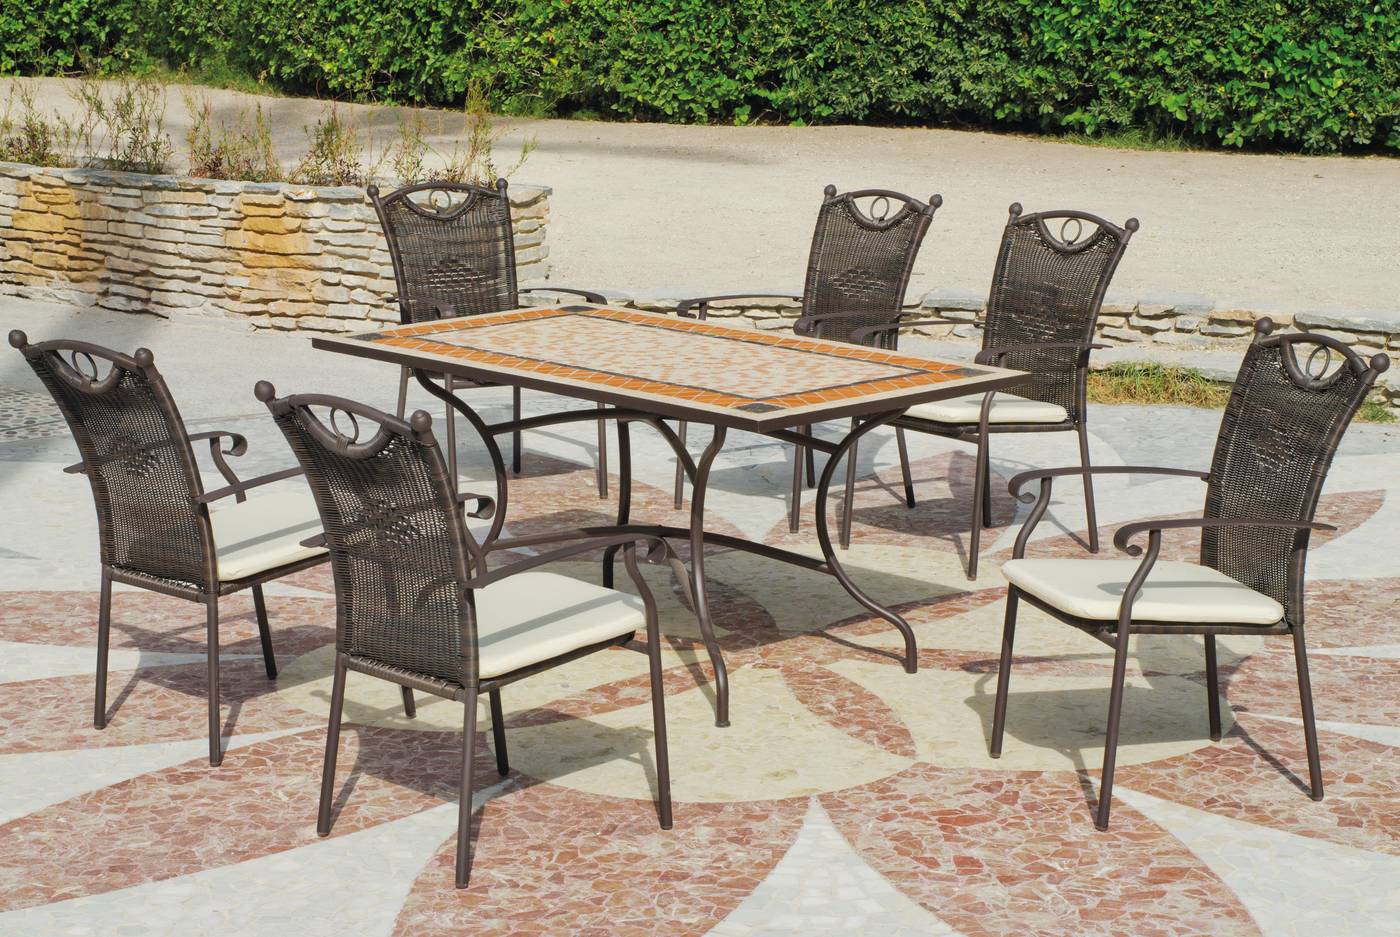 Conjunto para terraza o jardín de forja color bronce: 1 mesa con tablero mosaico + 4 sillones de forja y ratán sintético + 4 cojines.